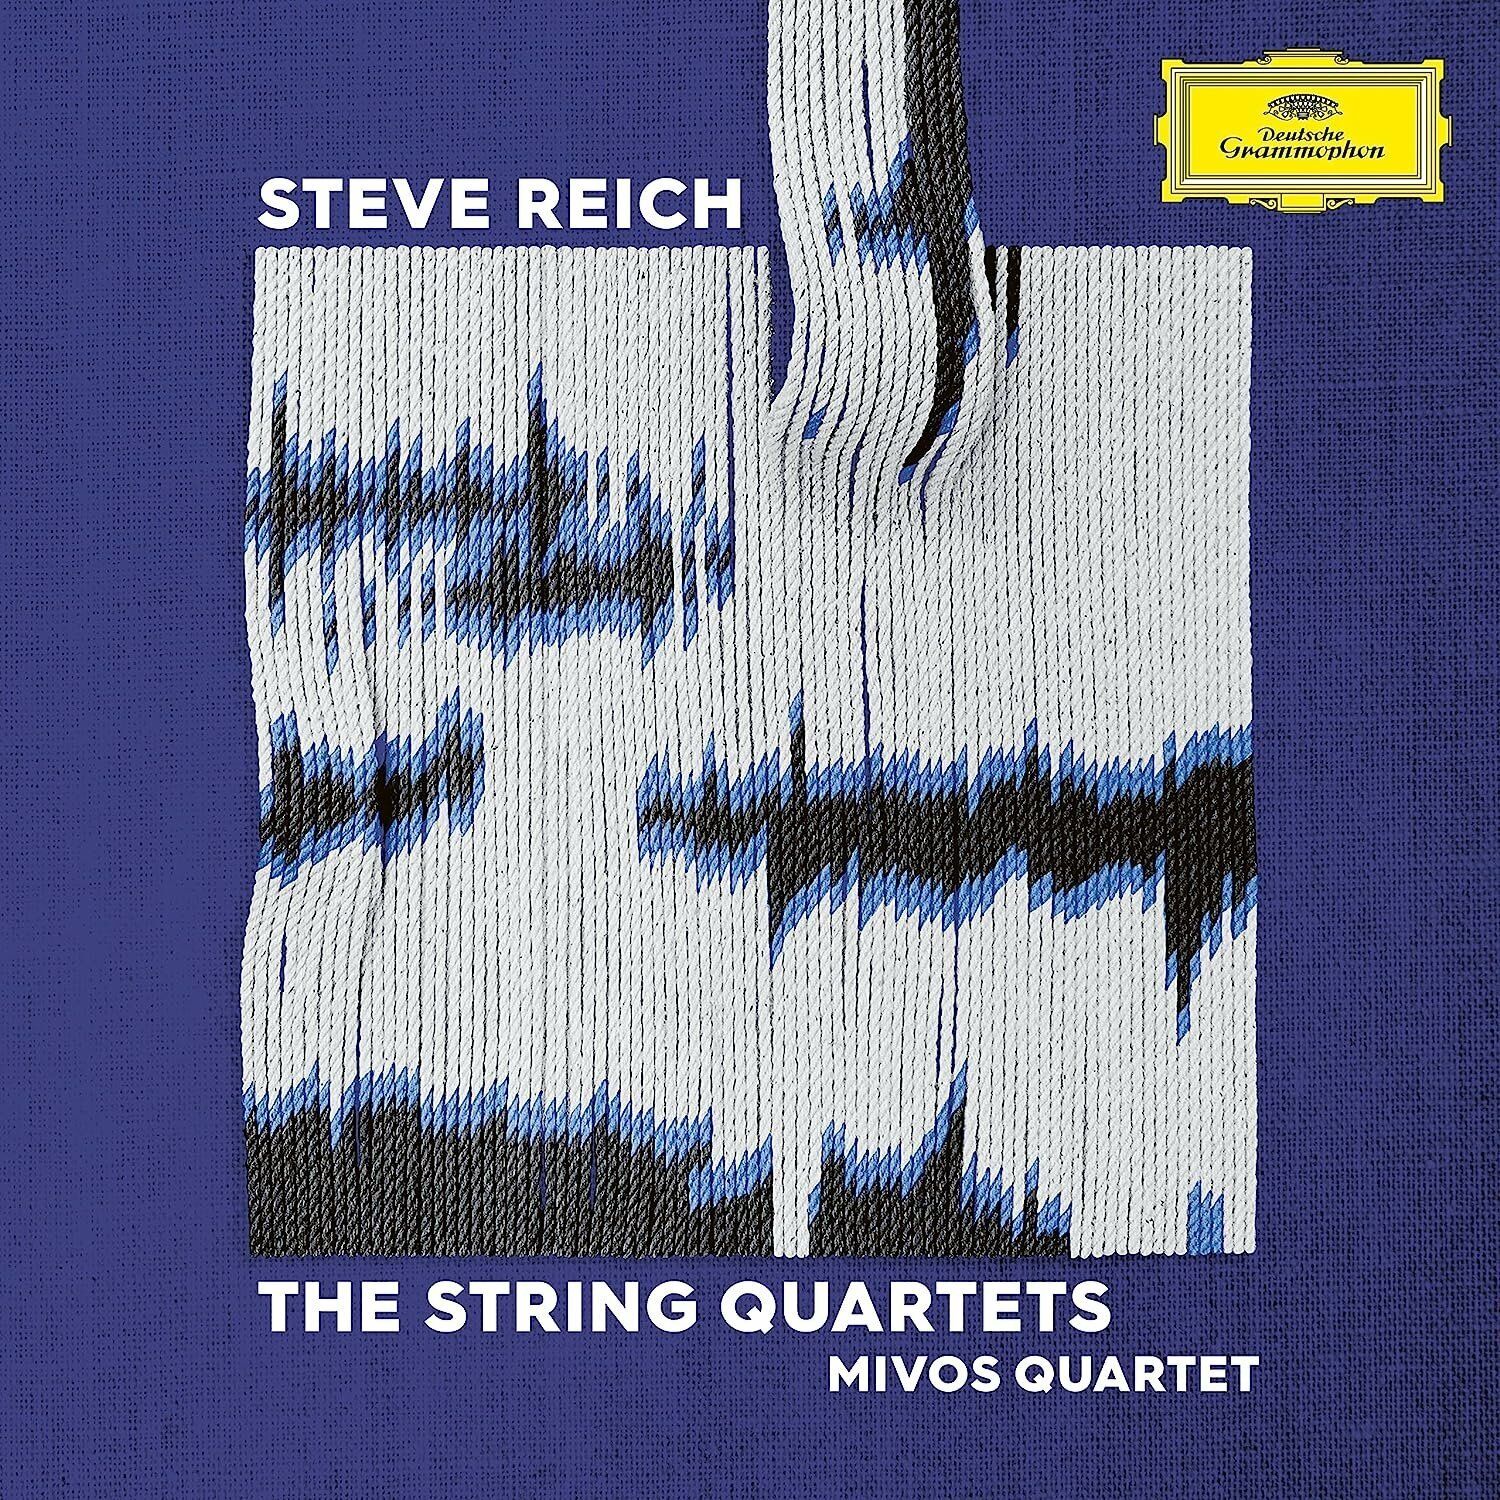 виниловая пластинка mivos quartet steve reich the string quartets 2 lp 0028948633869, Виниловая пластинка Mivos Quartet, Reich: The String Quartets